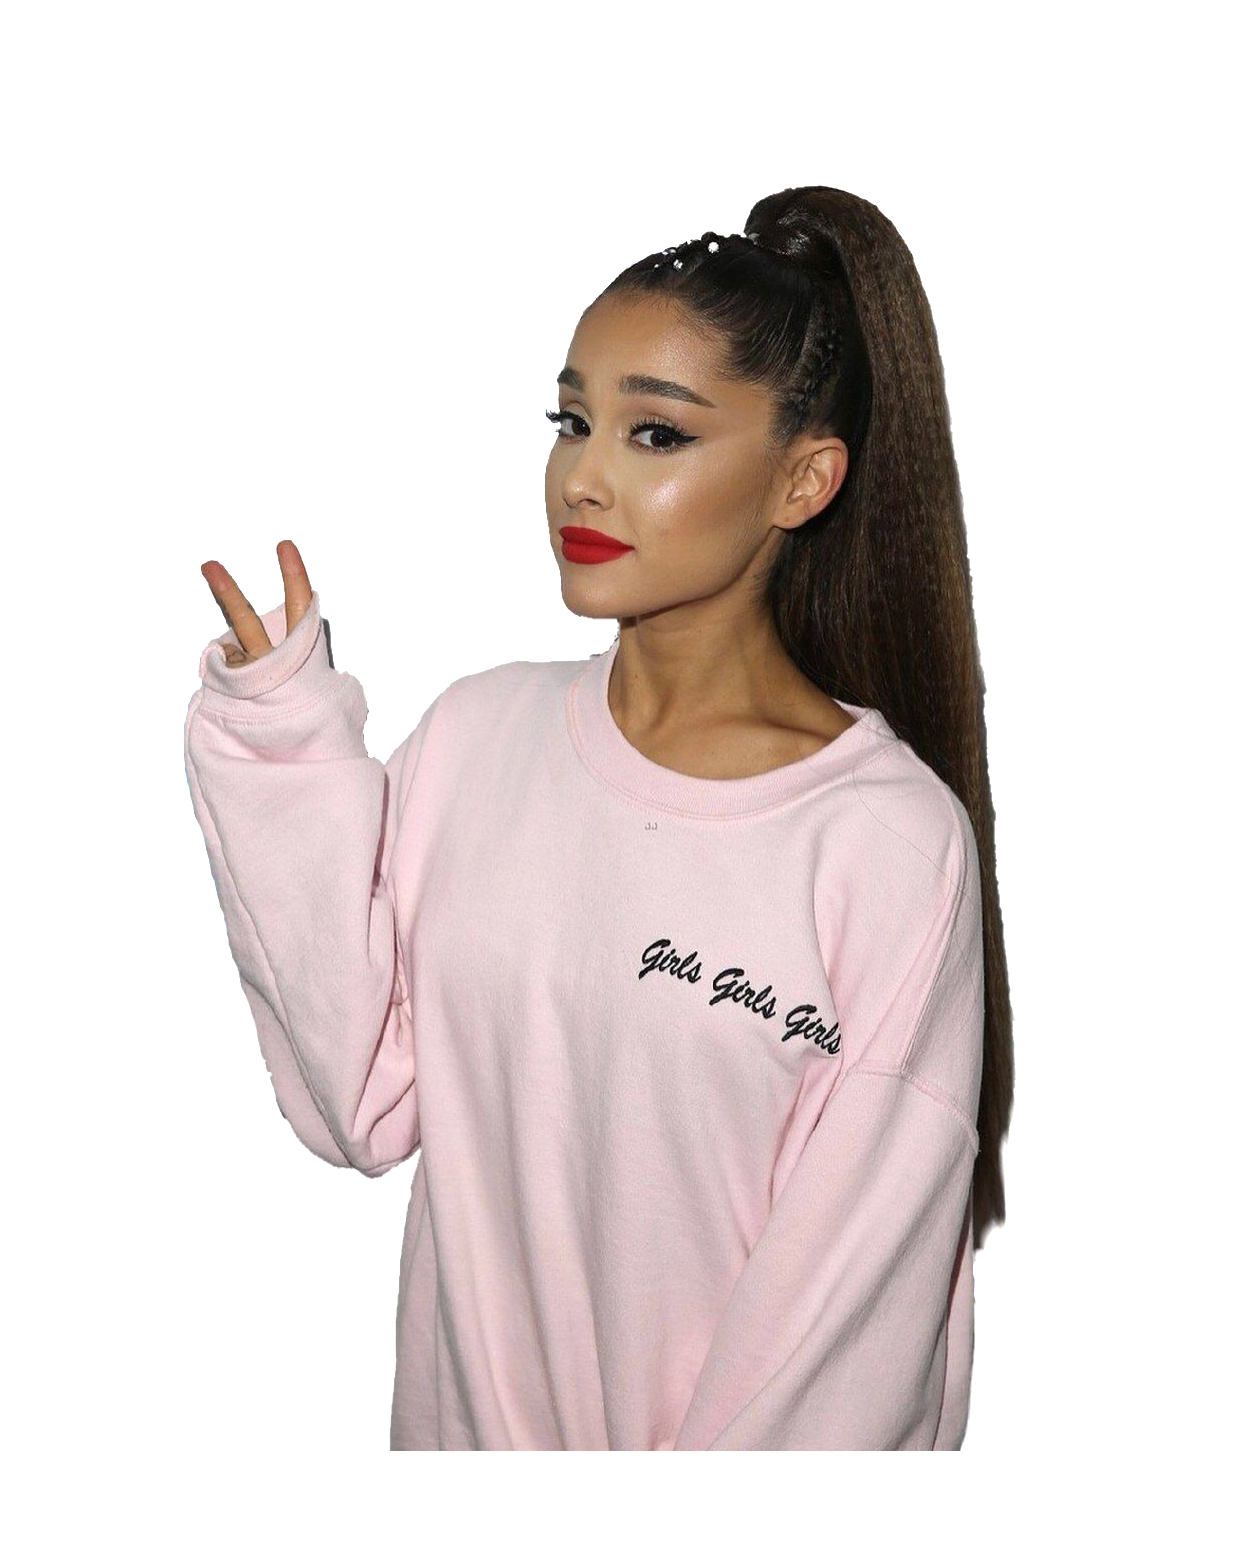 Ariana Grande Pink Shirt PNG Transparent pngteam.com